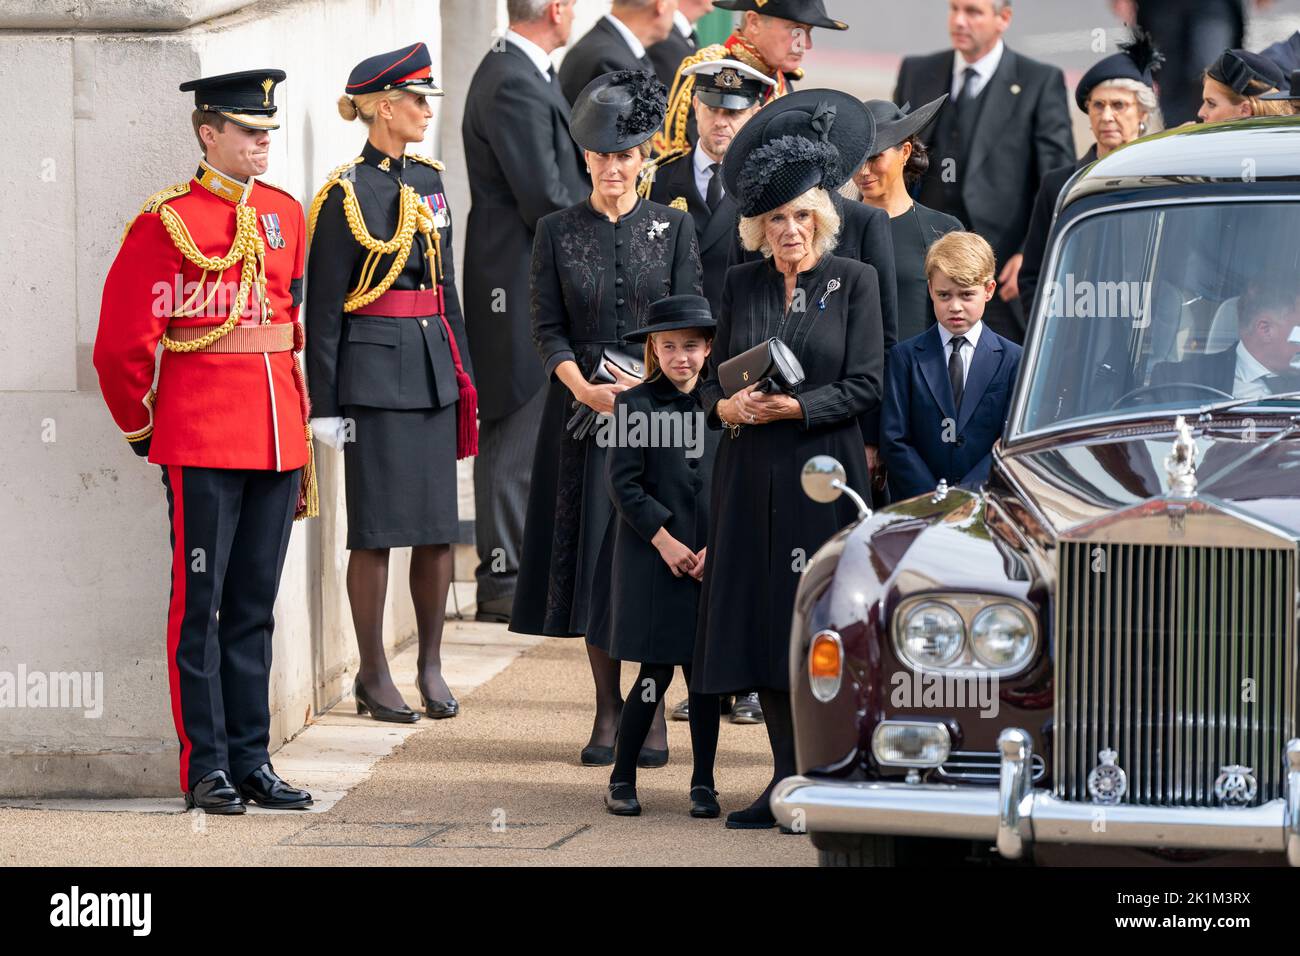 La Condesa de Wessex, la Princesa Charlotte, la Reina Consort y el Príncipe George como el Carruaje de Armas del Estado que lleva el ataúd de la Reina Isabel II llega al Arco de Wellington durante la Procesión Ceremonial que siguió a su Funeral del Estado en la Abadía de Westminster, Londres. Foto de stock